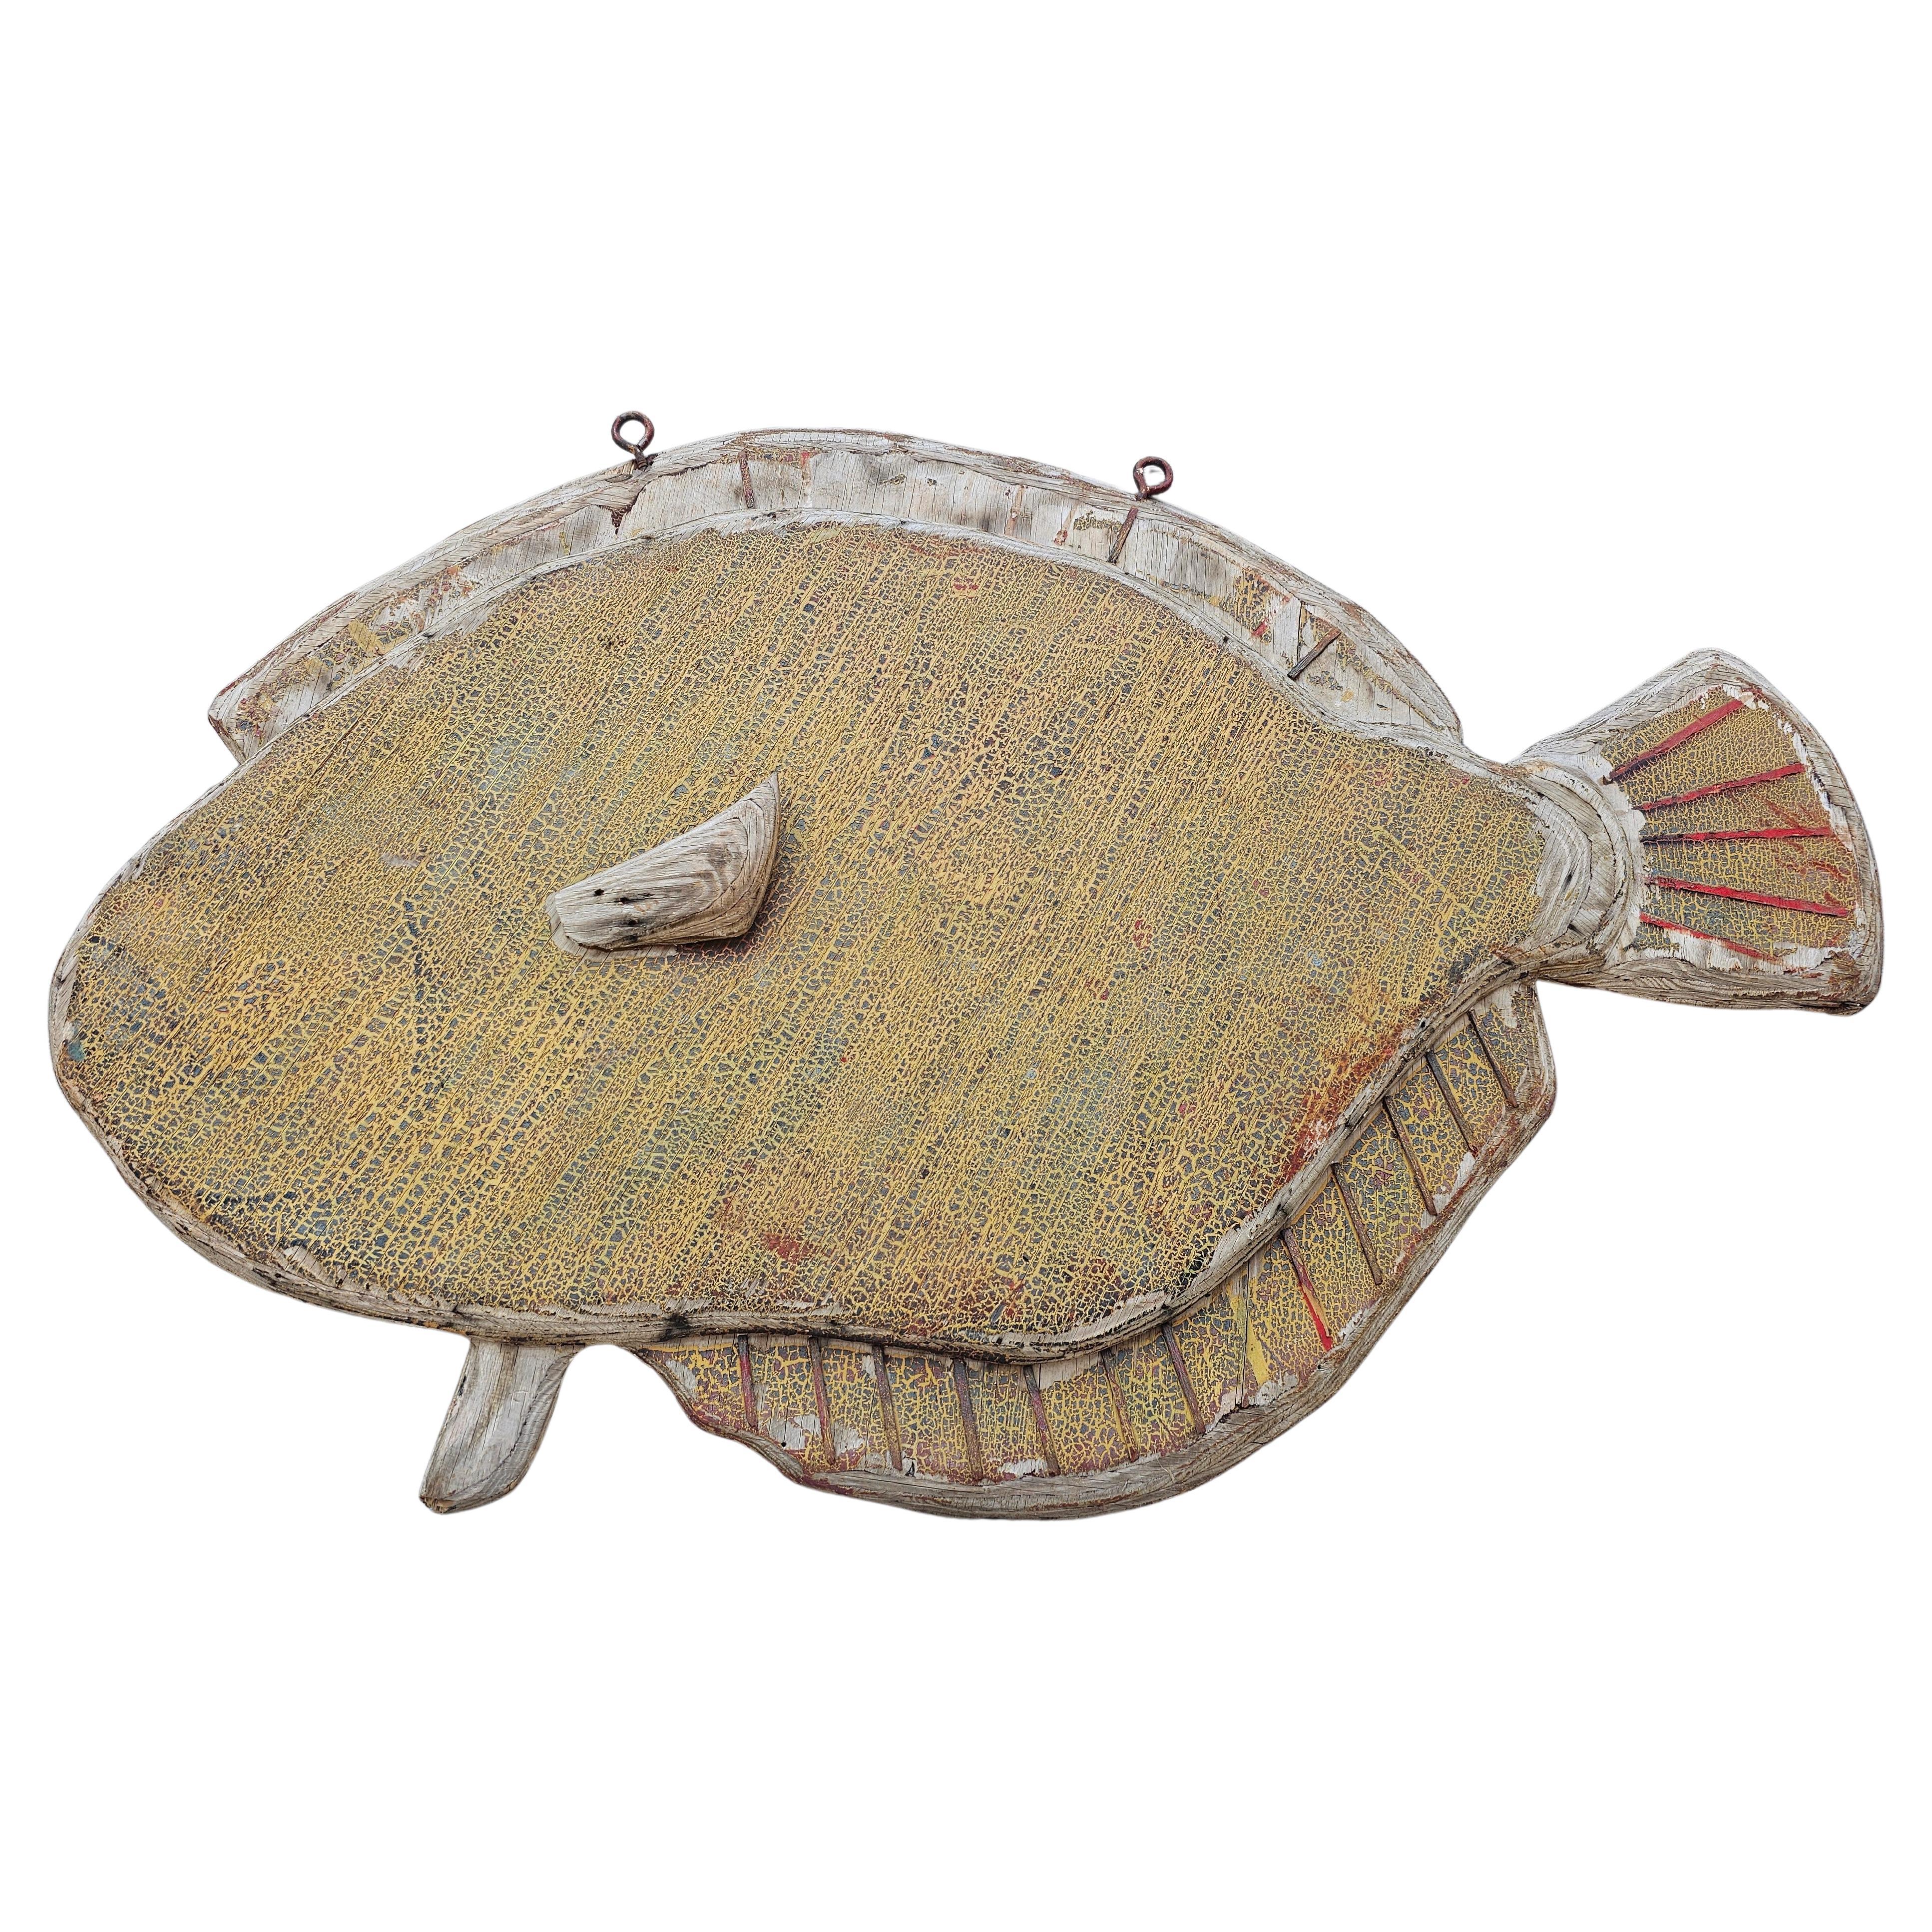 Antikes Nord Carolina Bait Shop Handelsschild aus bemaltem Holz mit Fischmotiven